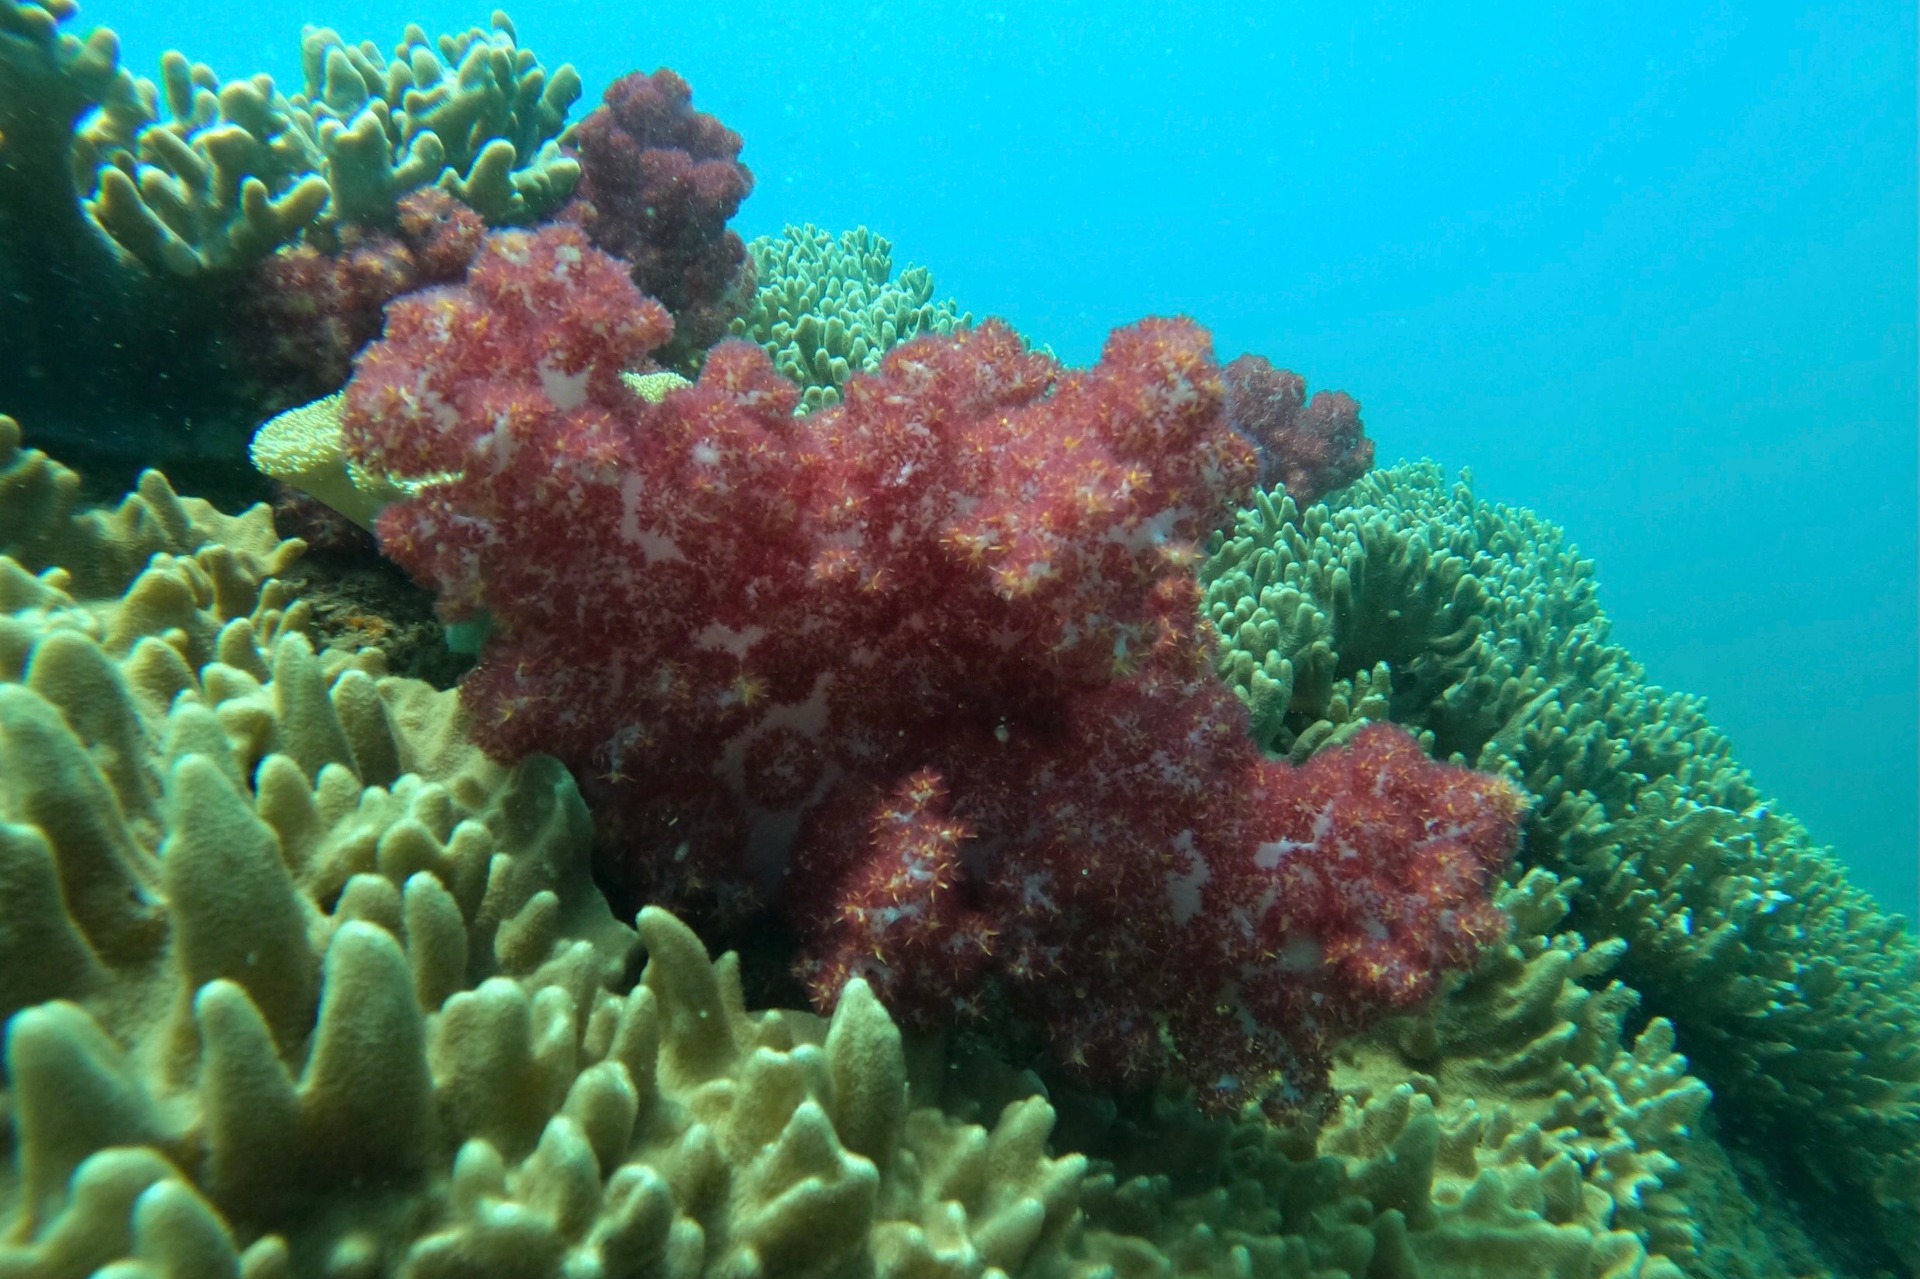 Ngỡ ngàng trước vẻ đẹp rạn san hô, sinh vật dưới đáy biển Đà Nẵng - Ảnh 5.